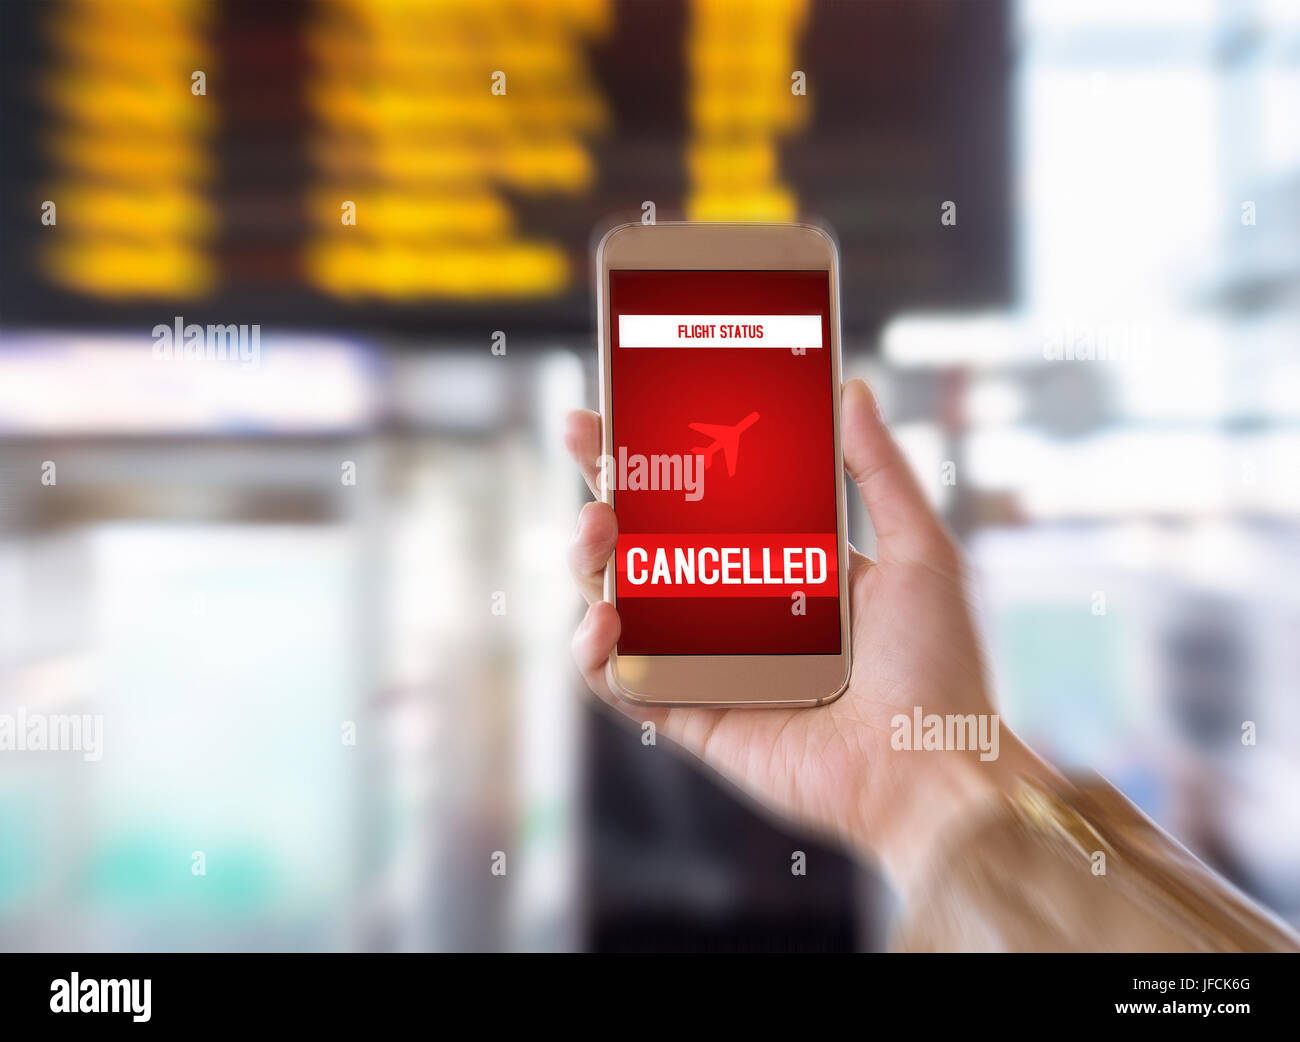 Flug storniert. Smartphone-App kündigt schlechte Nachrichten für Touristen. Streik oder ein Problem mit dem Flugzeug. Frau mit Handy im Flughafen terminal. Stockfoto